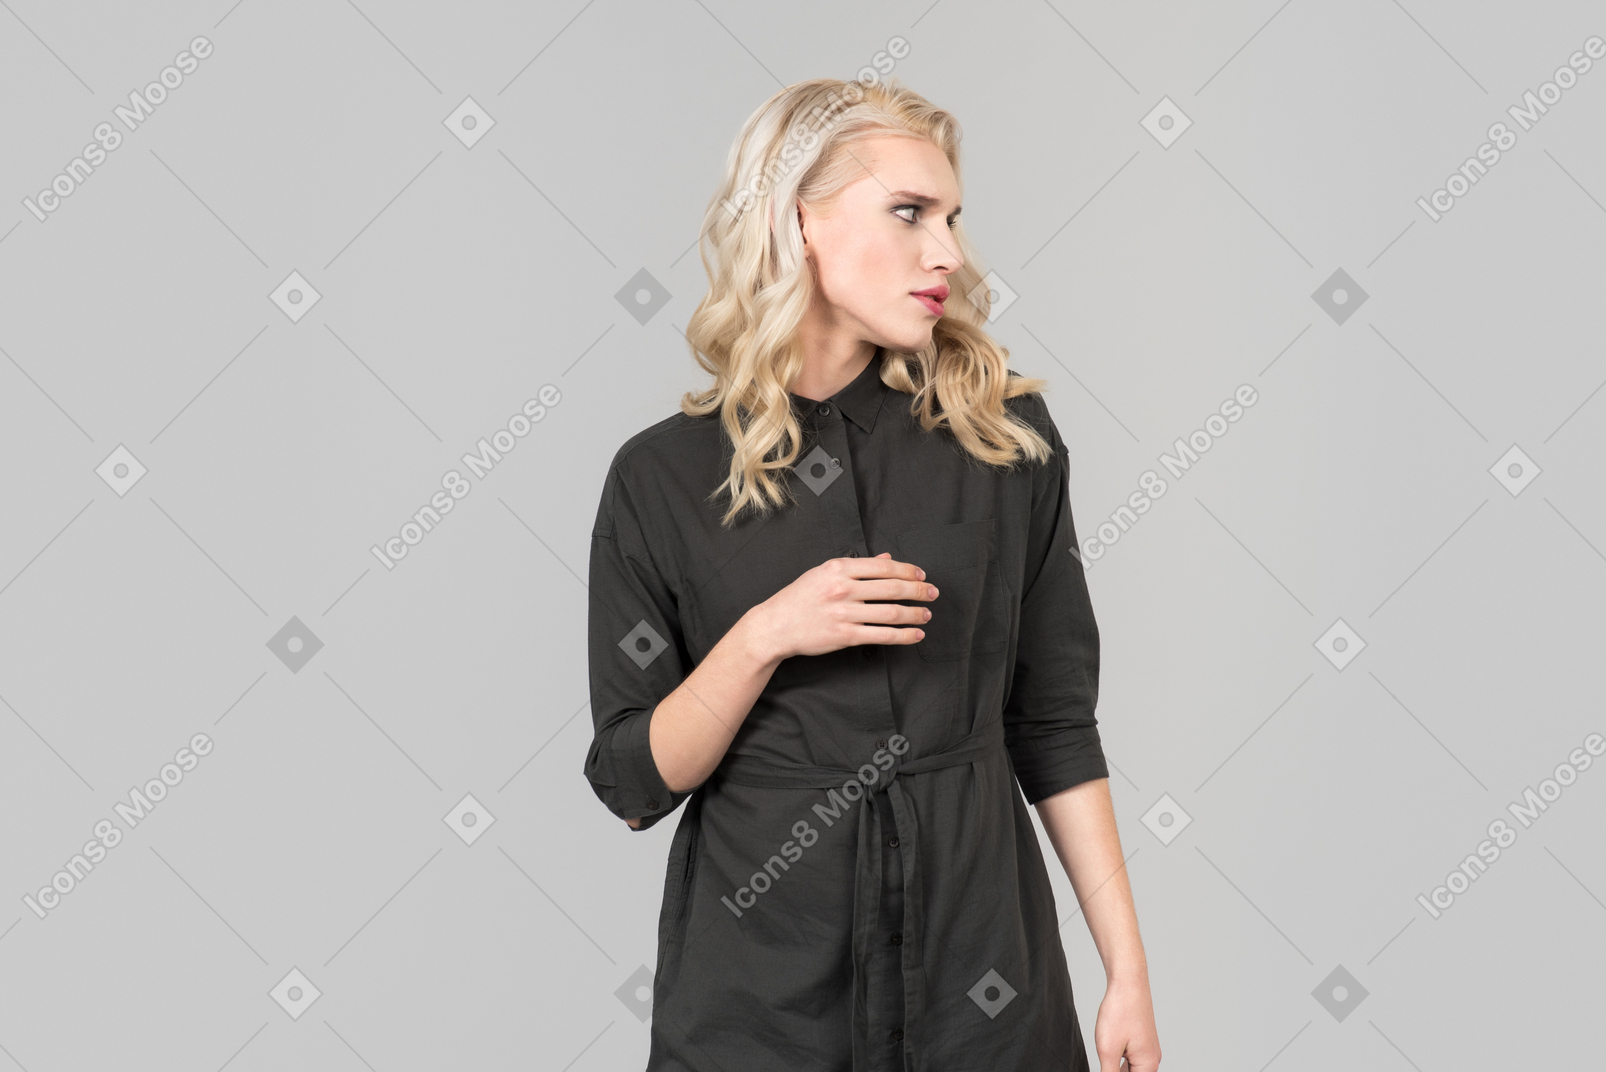 Una giovane persona dai capelli biondi in un abito nero in piedi contro il semplice sfondo grigio